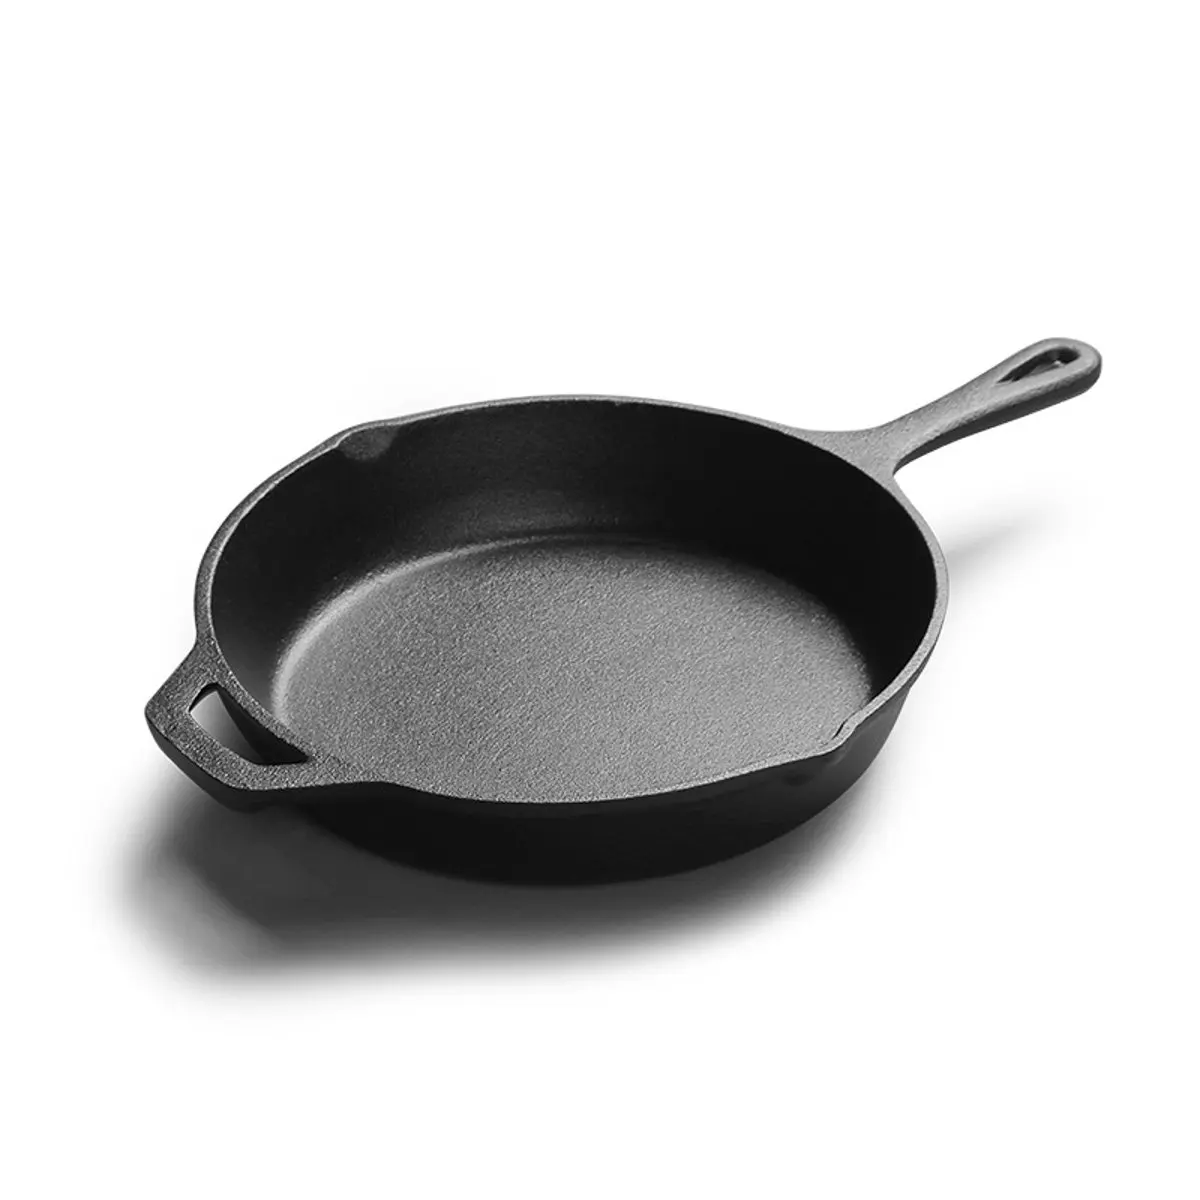 Чугунный поддон для сковороды многоцелевой сковорода сковородка для блинов стейк гриль сковорода антипригарная Кастрюля для приготовления пищи бытовые кухонные приспособления для готовки - Цвет: Pan Only